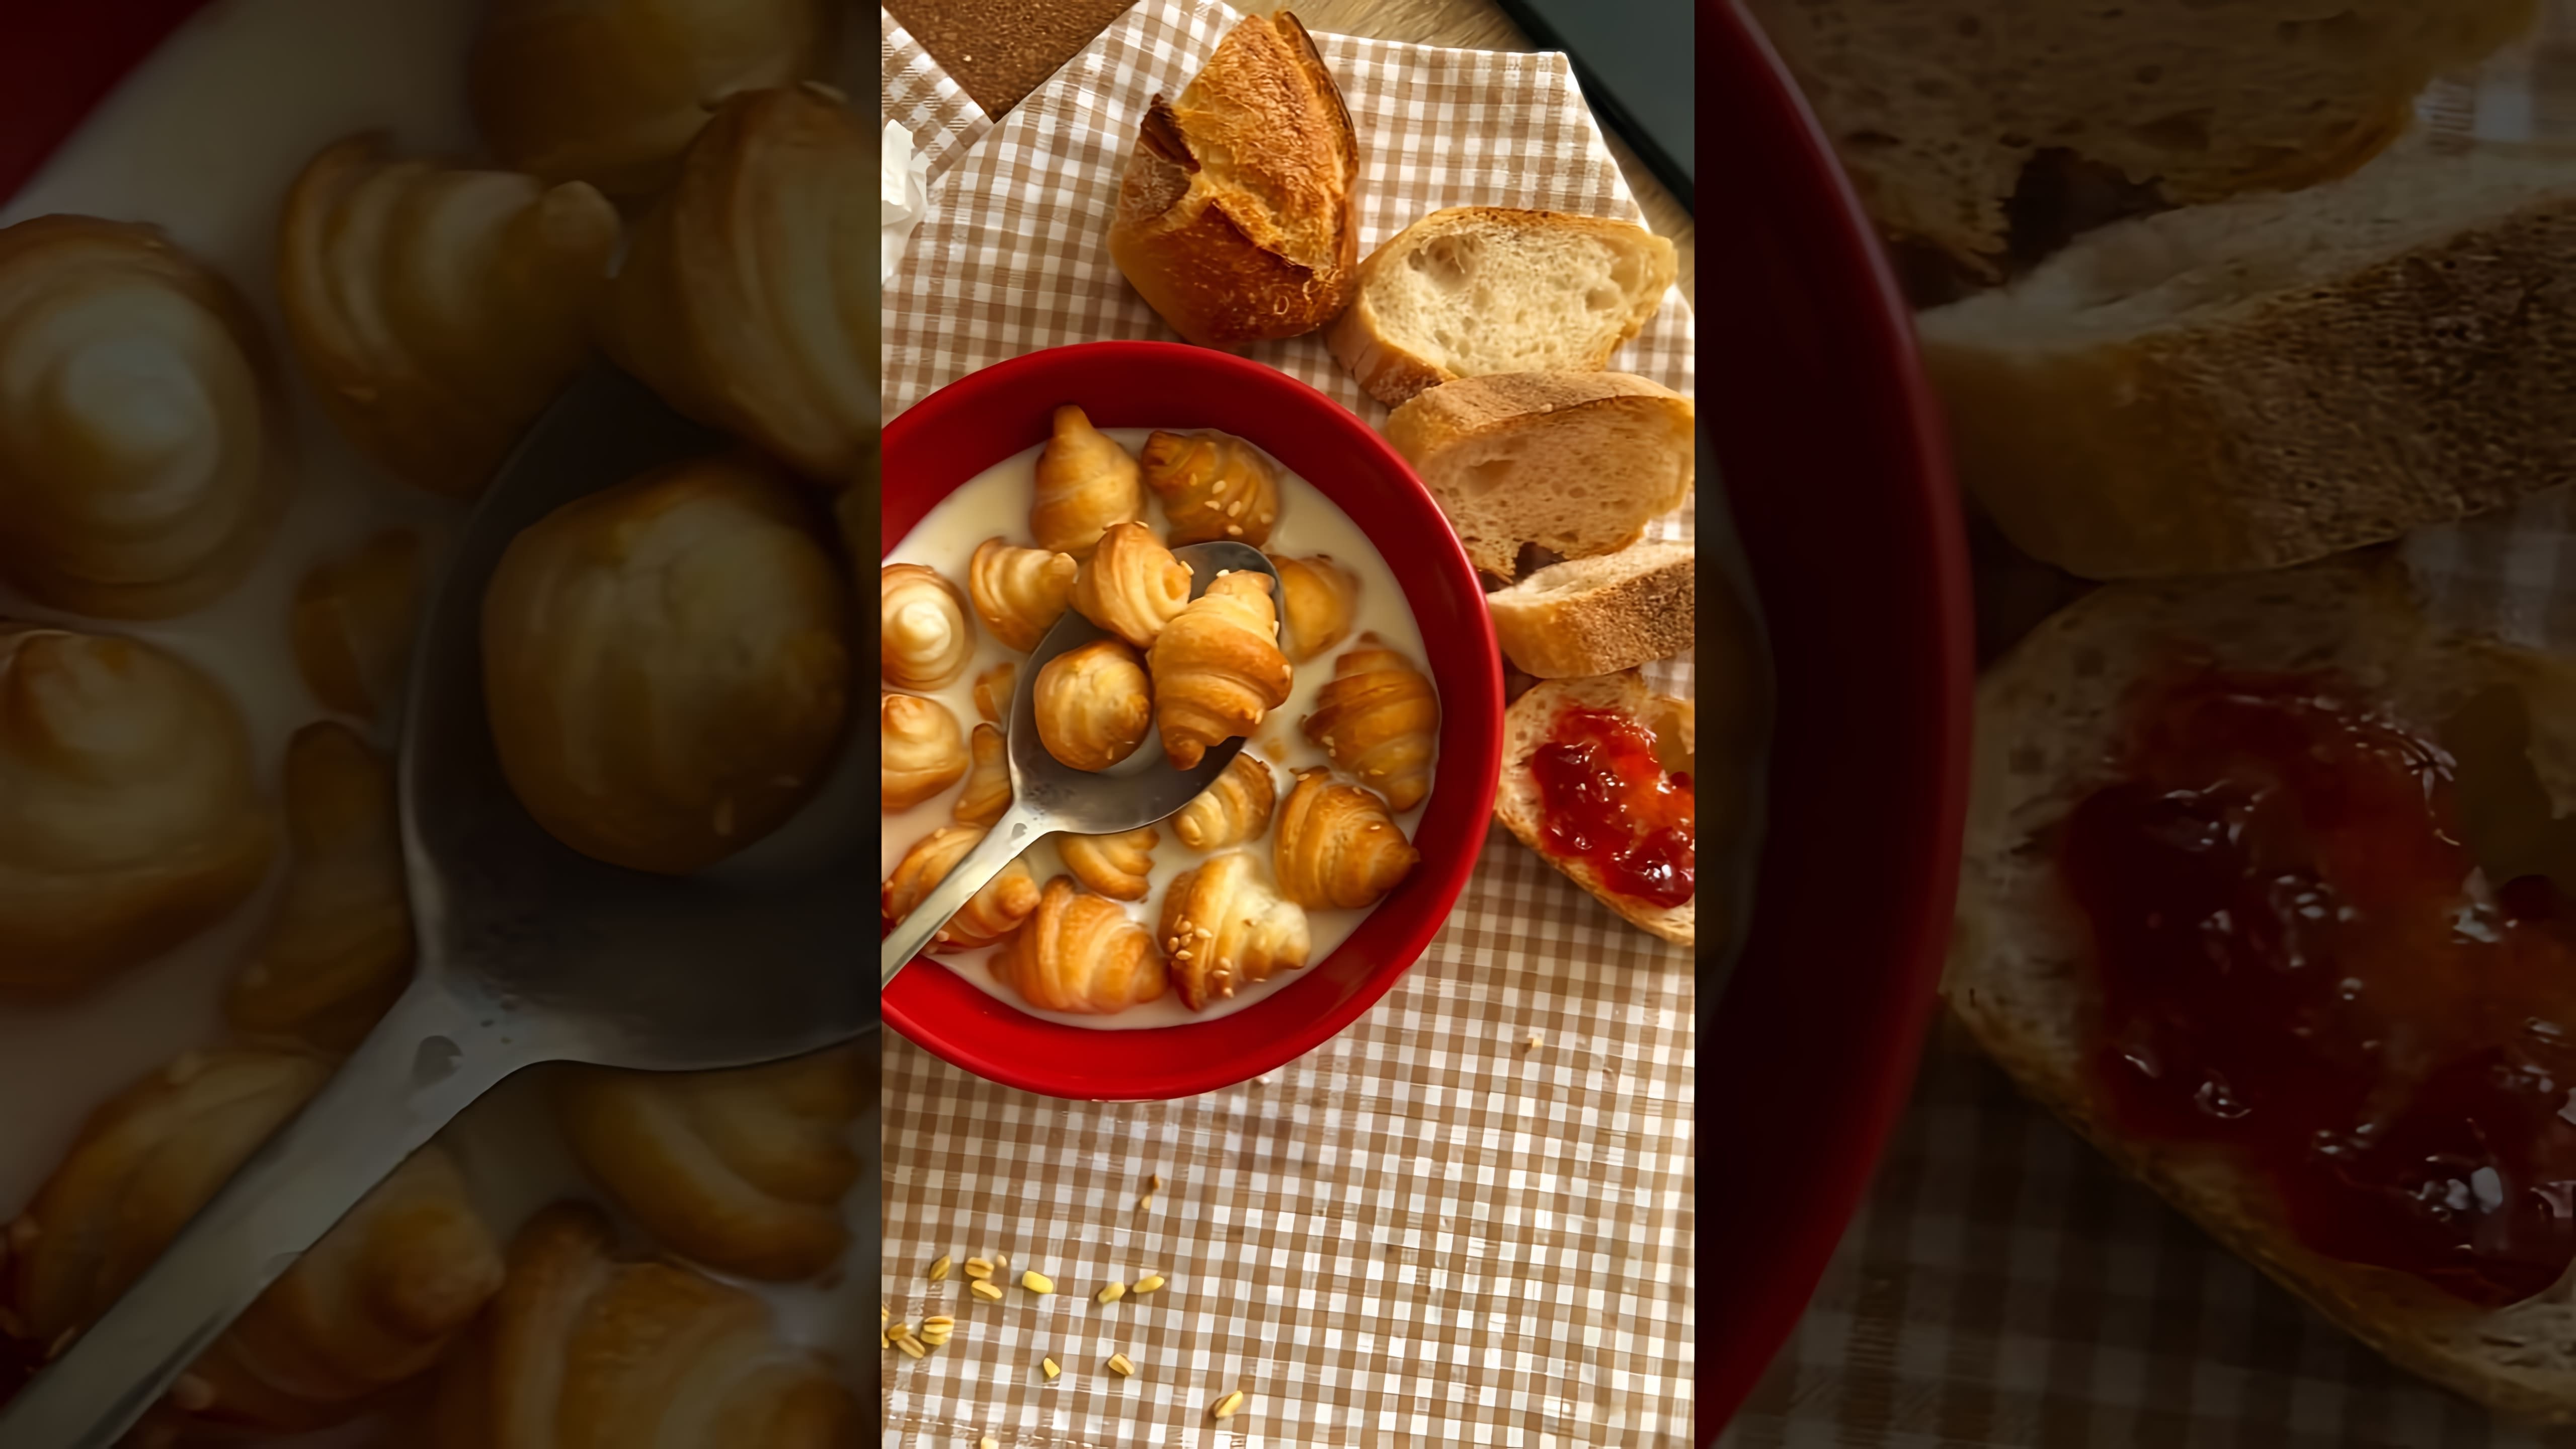 В этом видео демонстрируется рецепт мини-круассанов, которые можно использовать как завтрак или перекус